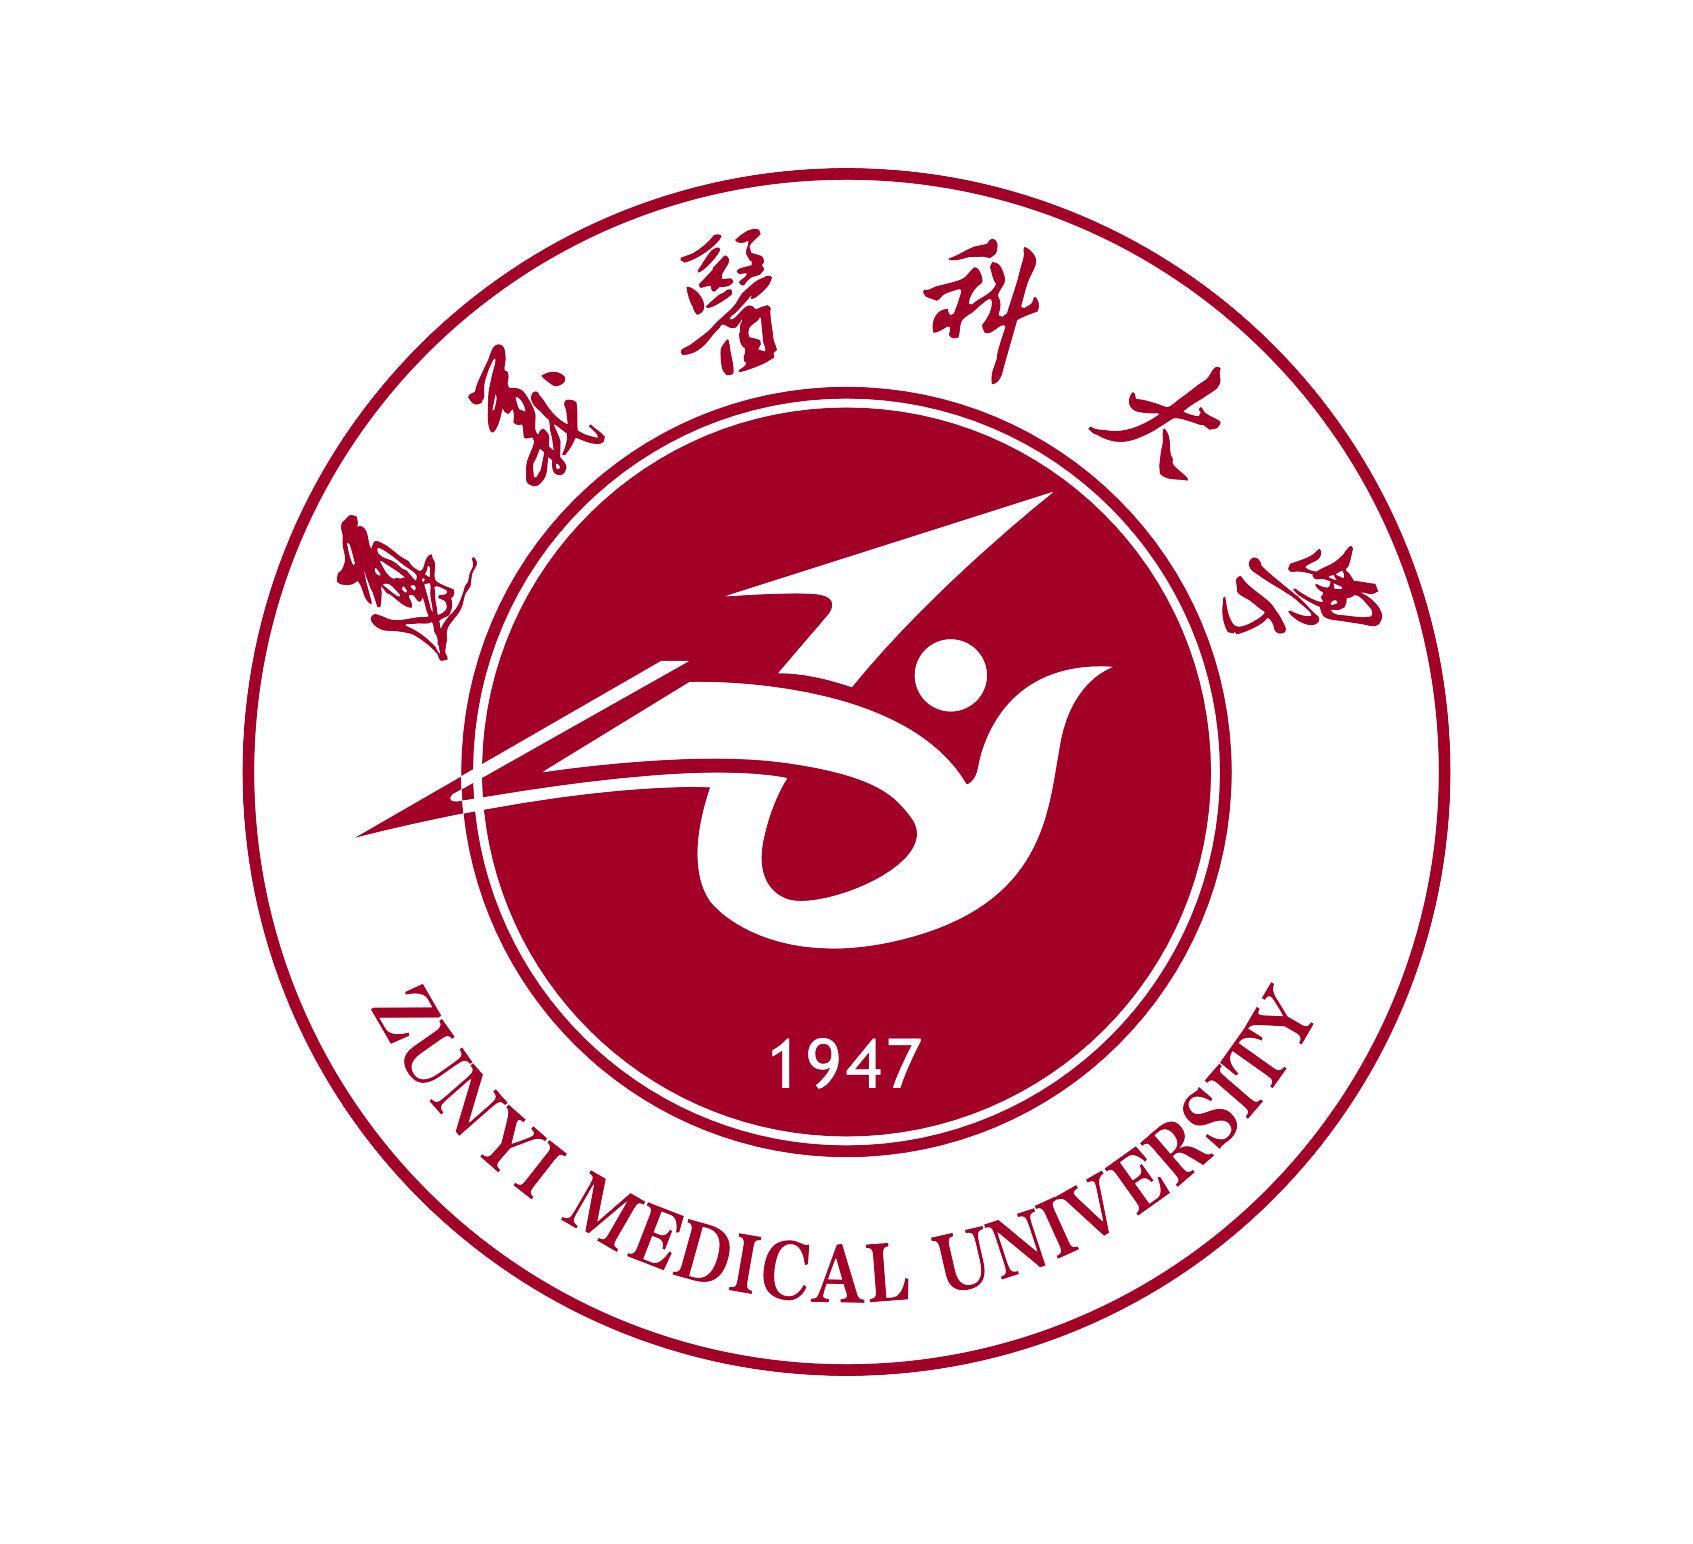 遵义医科大学 zunyi medical university 1947商标公告